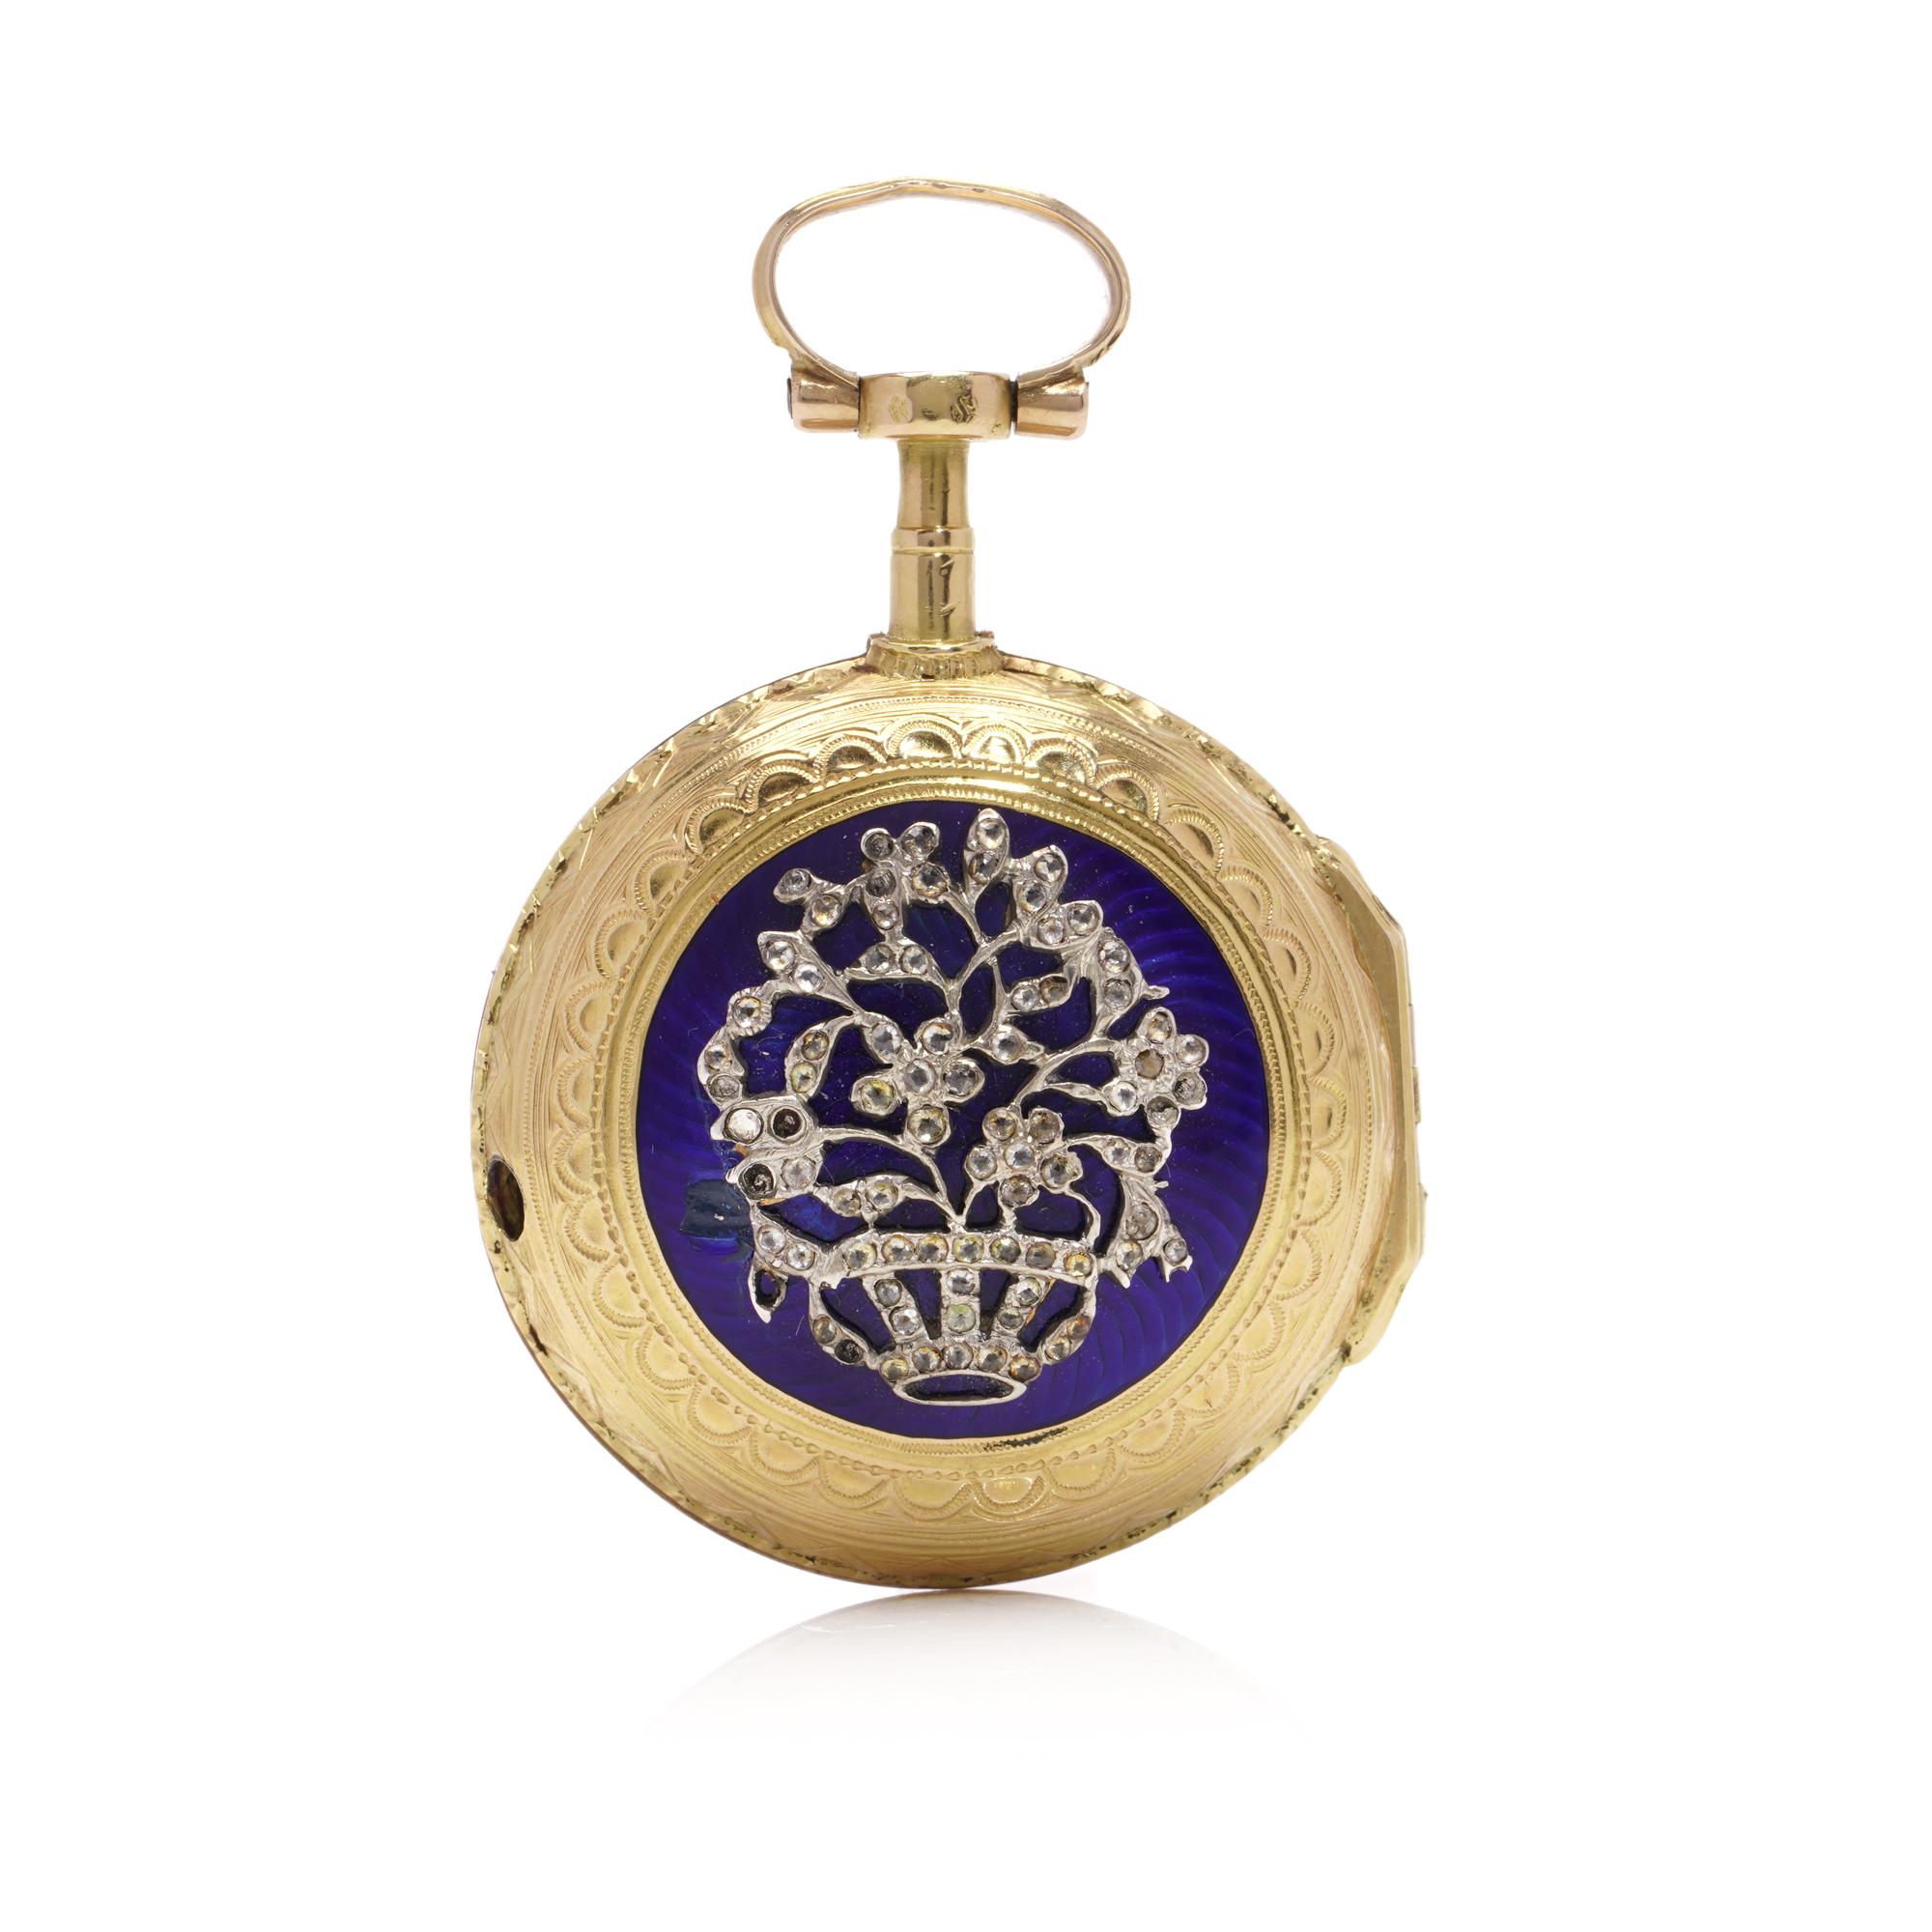 Antique Mouvement Lépine Verge fin XVIIIe siècle à clef de remontoir en or 18kt, une montre de poche en argent dont le boîtier est décoré d'émail bleu, et un coffret de bouquet de fleurs en argent, ensemble de pastilles.

Poinçonné sur le mouvement,